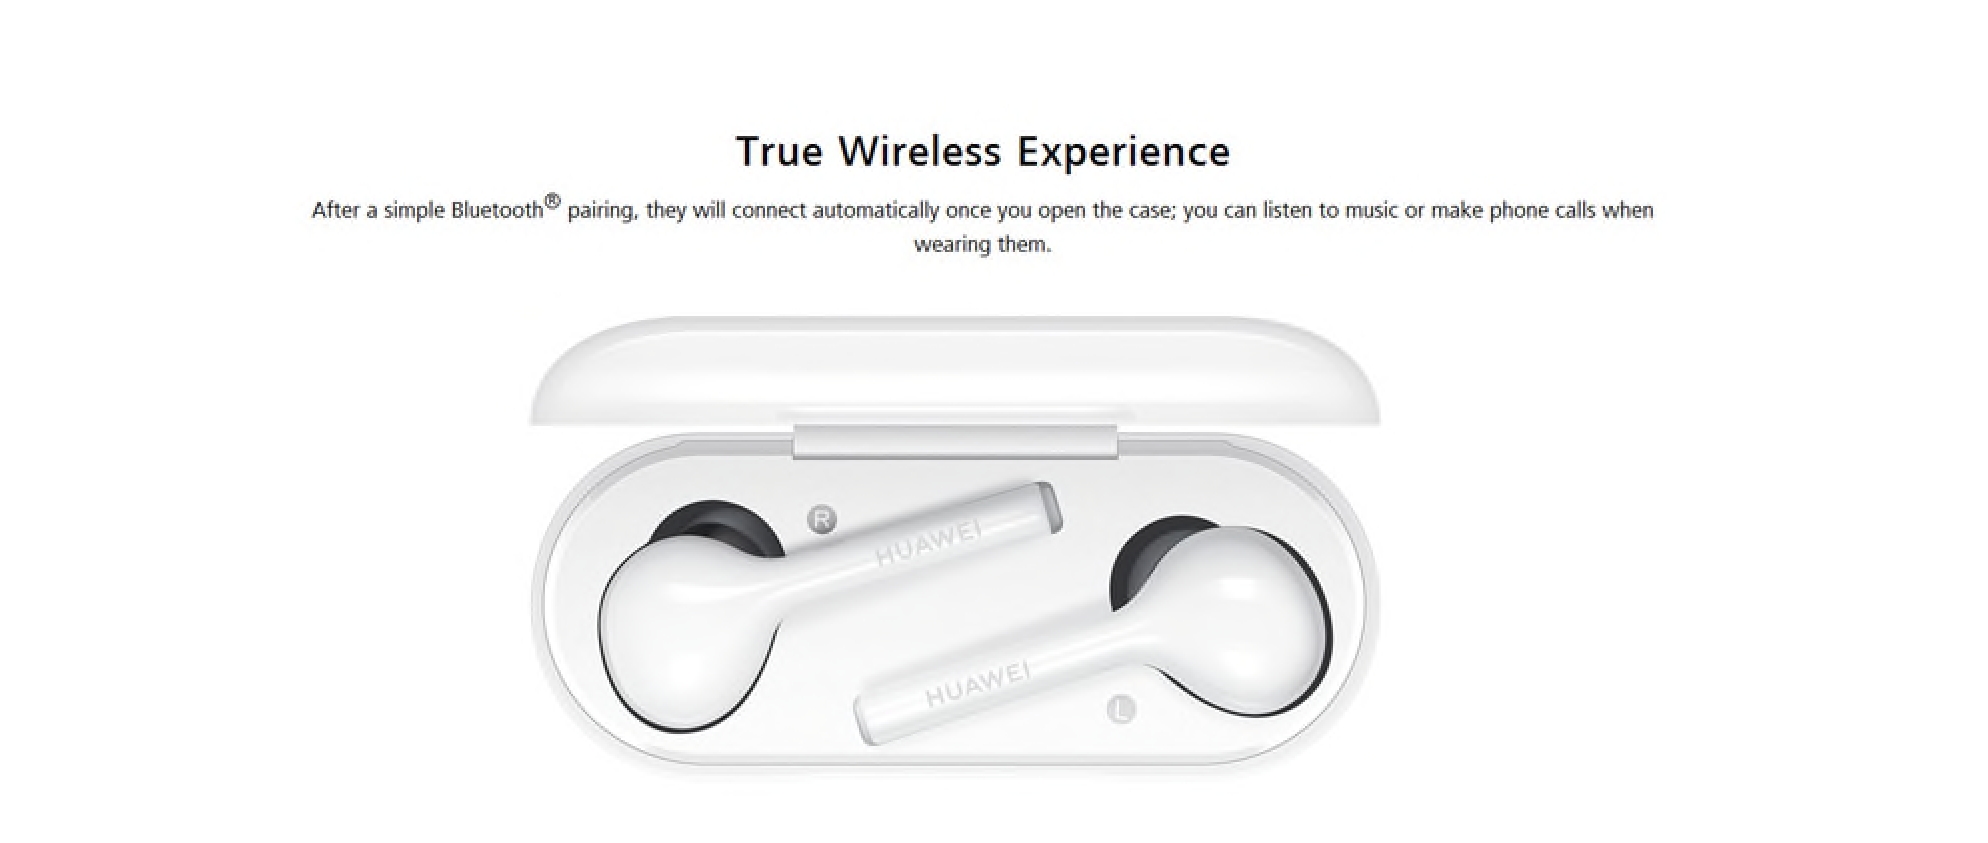 Originální bezdrátová sluchátka Huawei FreeBuds nyní v akci! [sponzorovaný článek]